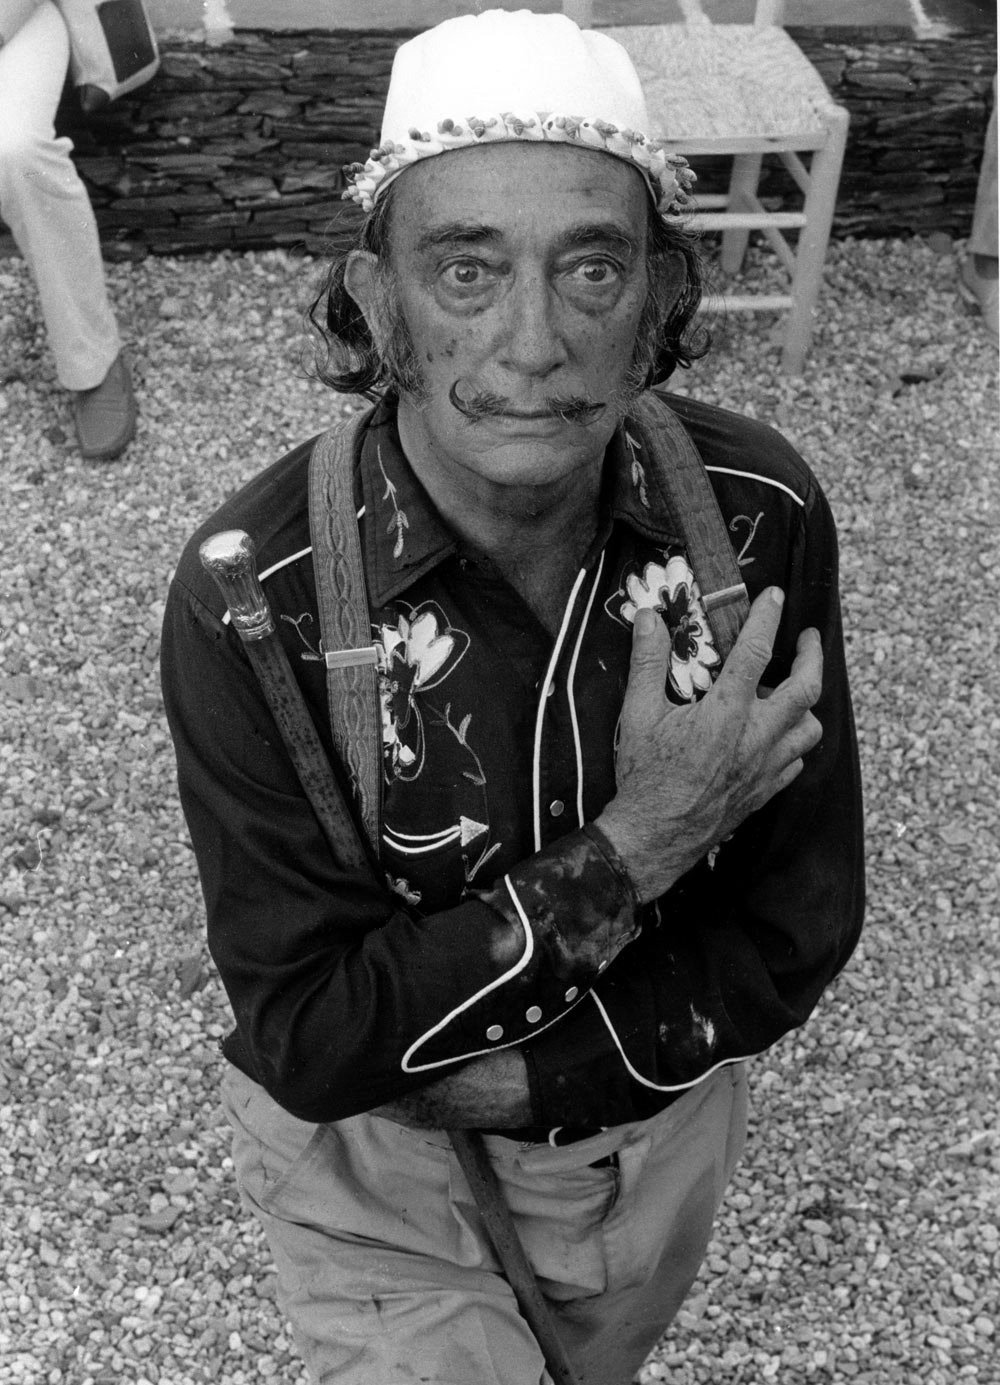 Salvador Dali at home in Cadaqués, Spain 1968